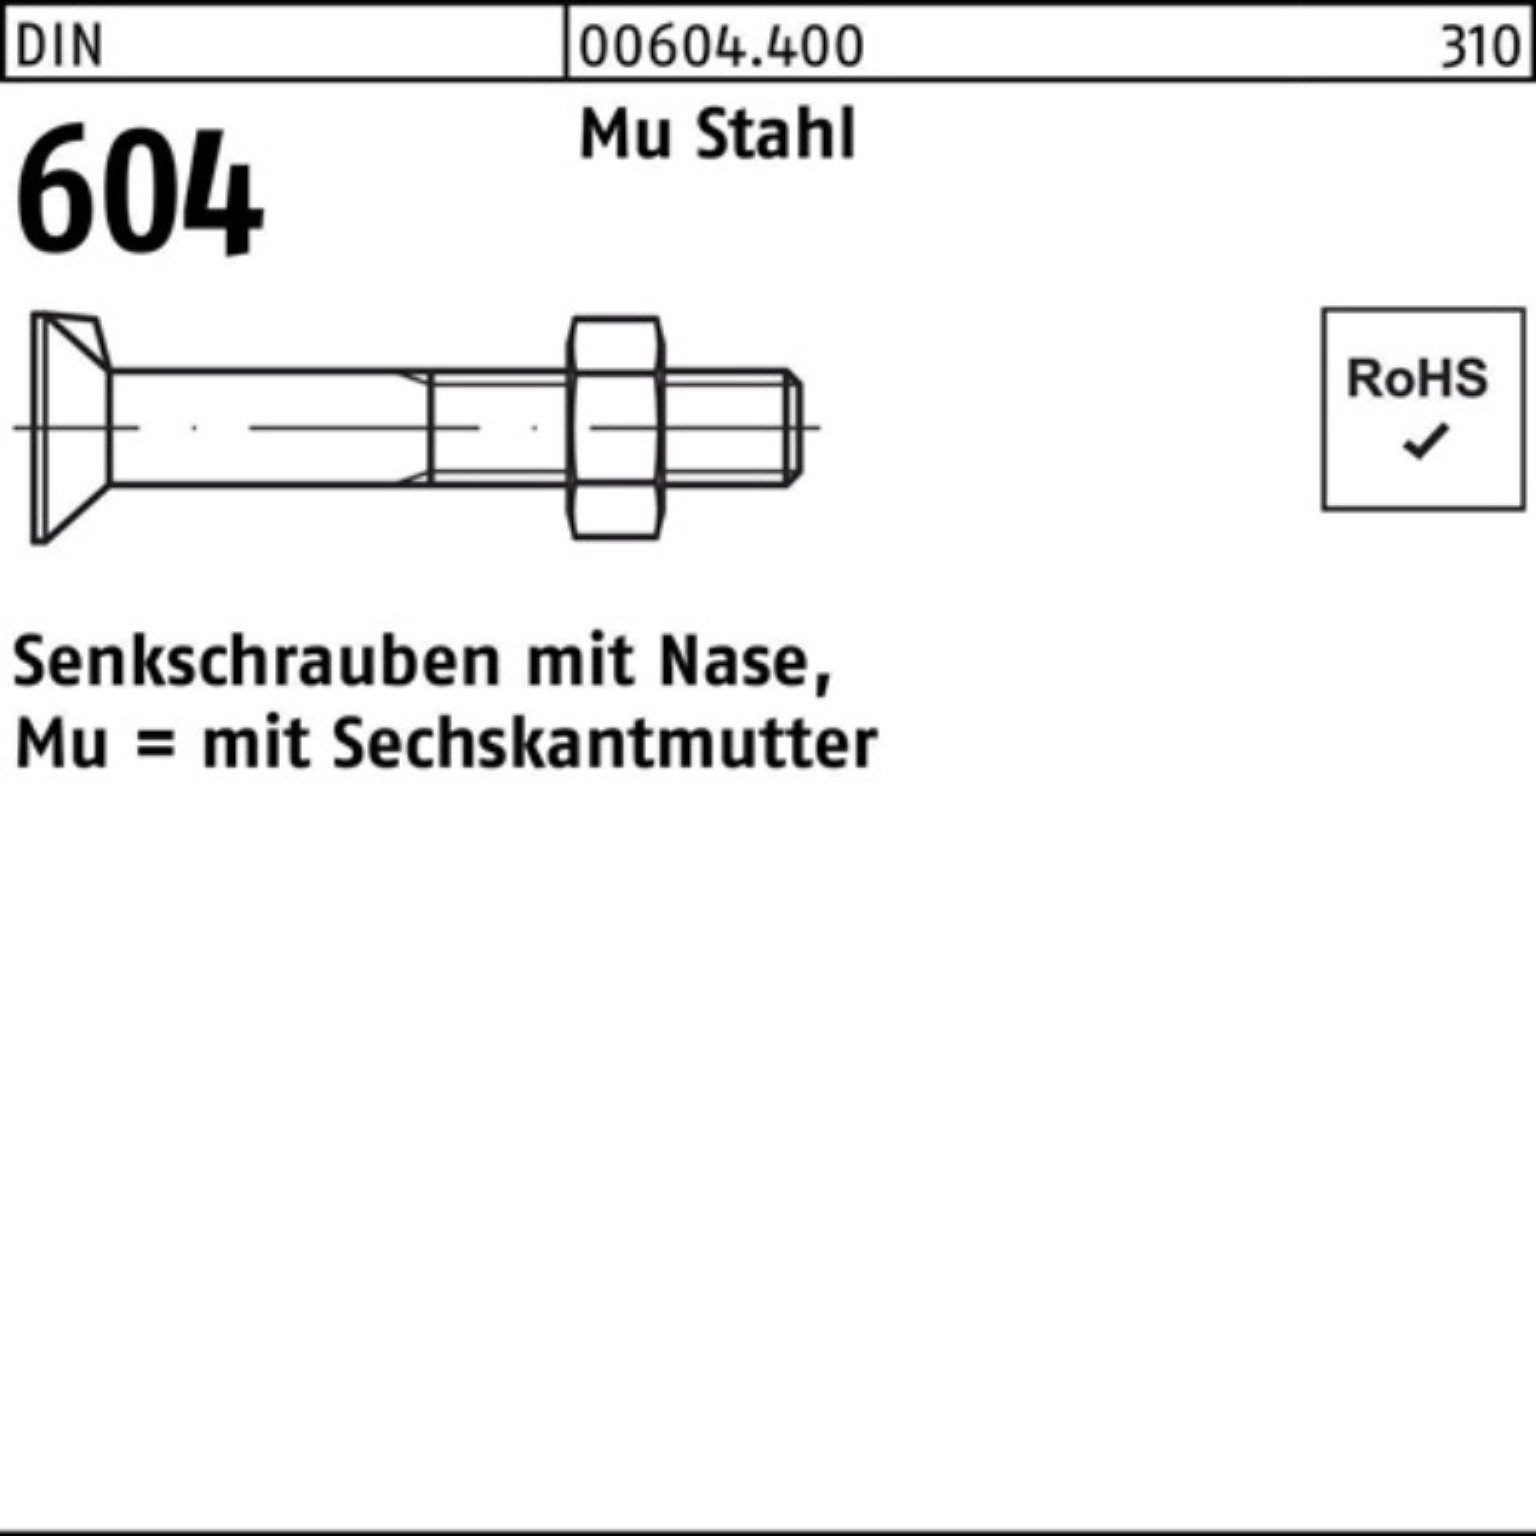 Reyher Senkschraube 100er Pack Senkschraube DIN 604 Nase/6-ktmutter M16x 100 Mu Stahl 4.6